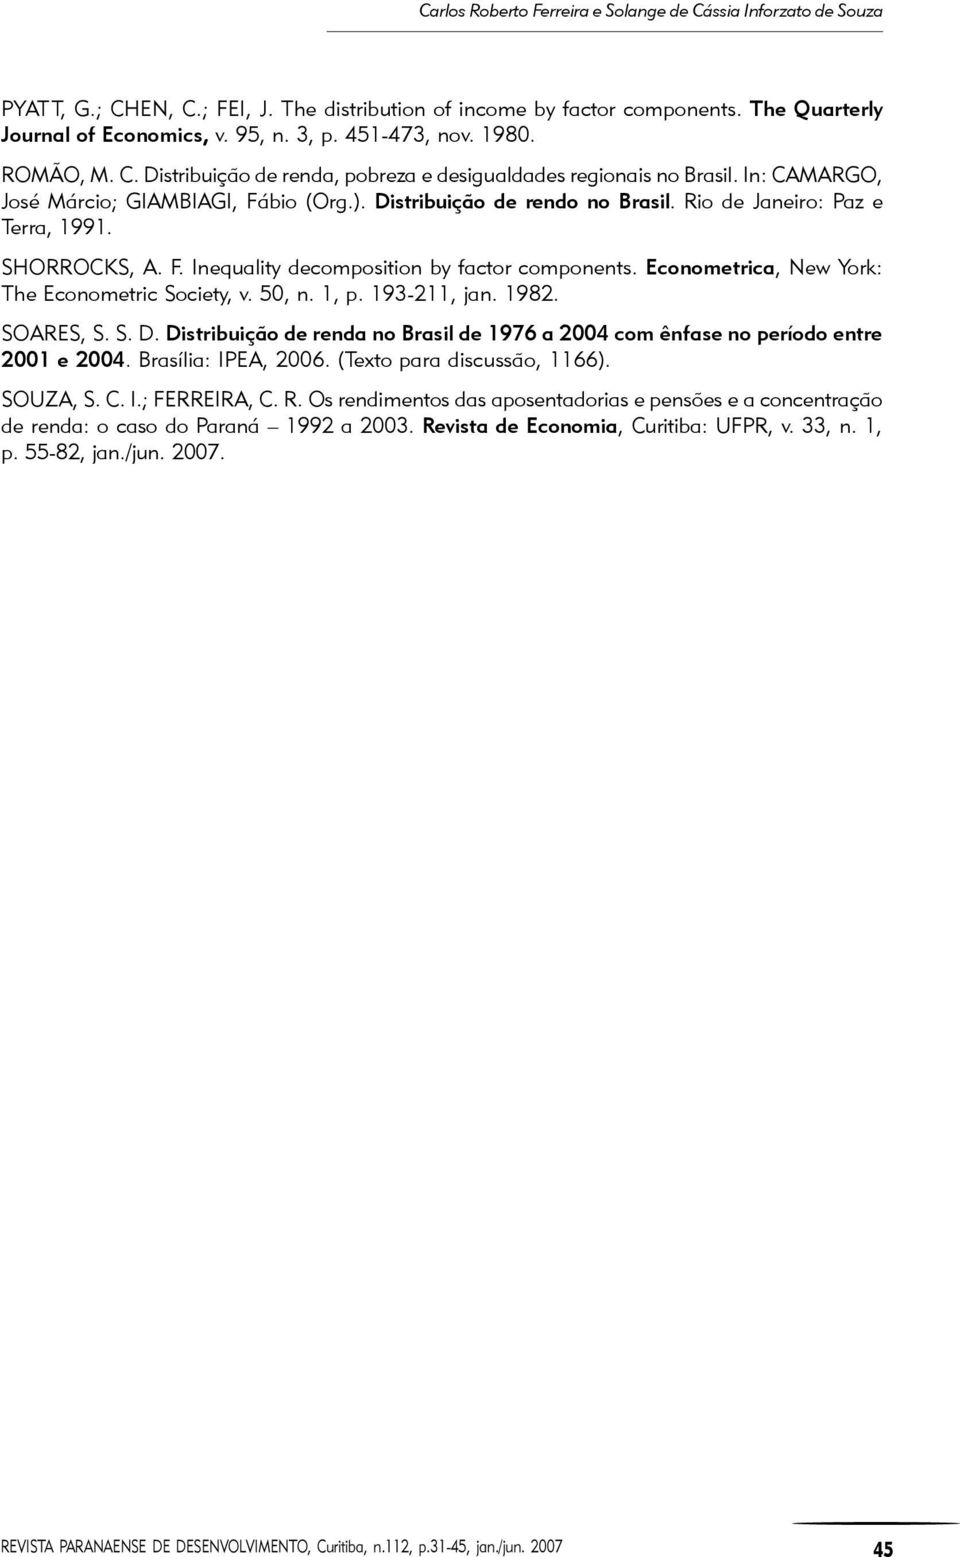 Econometrica, New York: The Econometric Society, v. 50, n. 1, p. 193-211, jan. 1982. SOARES, S. S. D. Distribuição de renda no Brasil de 1976 a 2004 com ênfase no período entre 2001 e 2004.